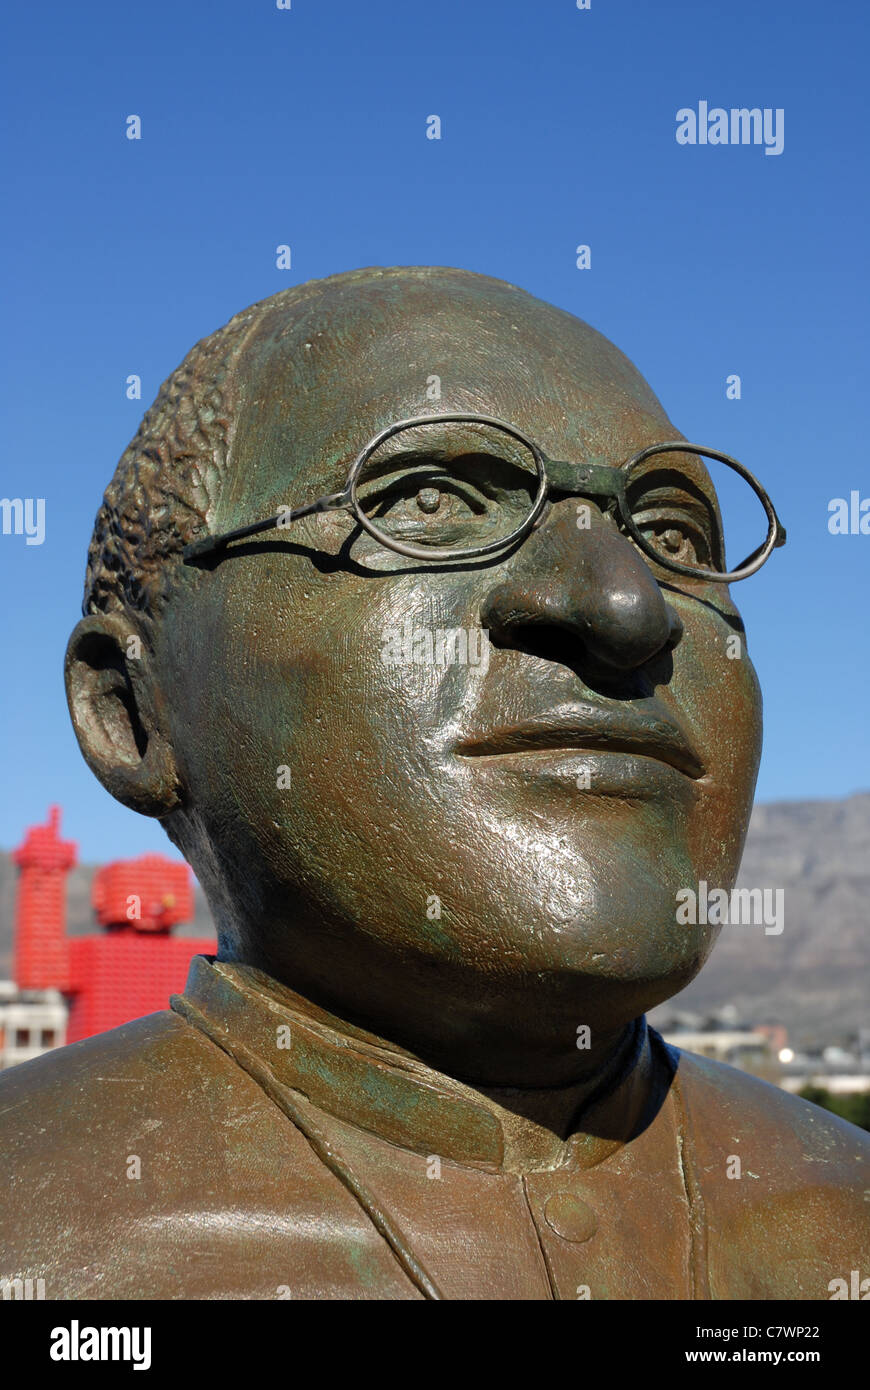 Büste von Desmond Tutu, Friedensnobelpreisträger, nobel Square, v&a Waterfront, Cape Town, Western Cape, Südafrika Stockfoto